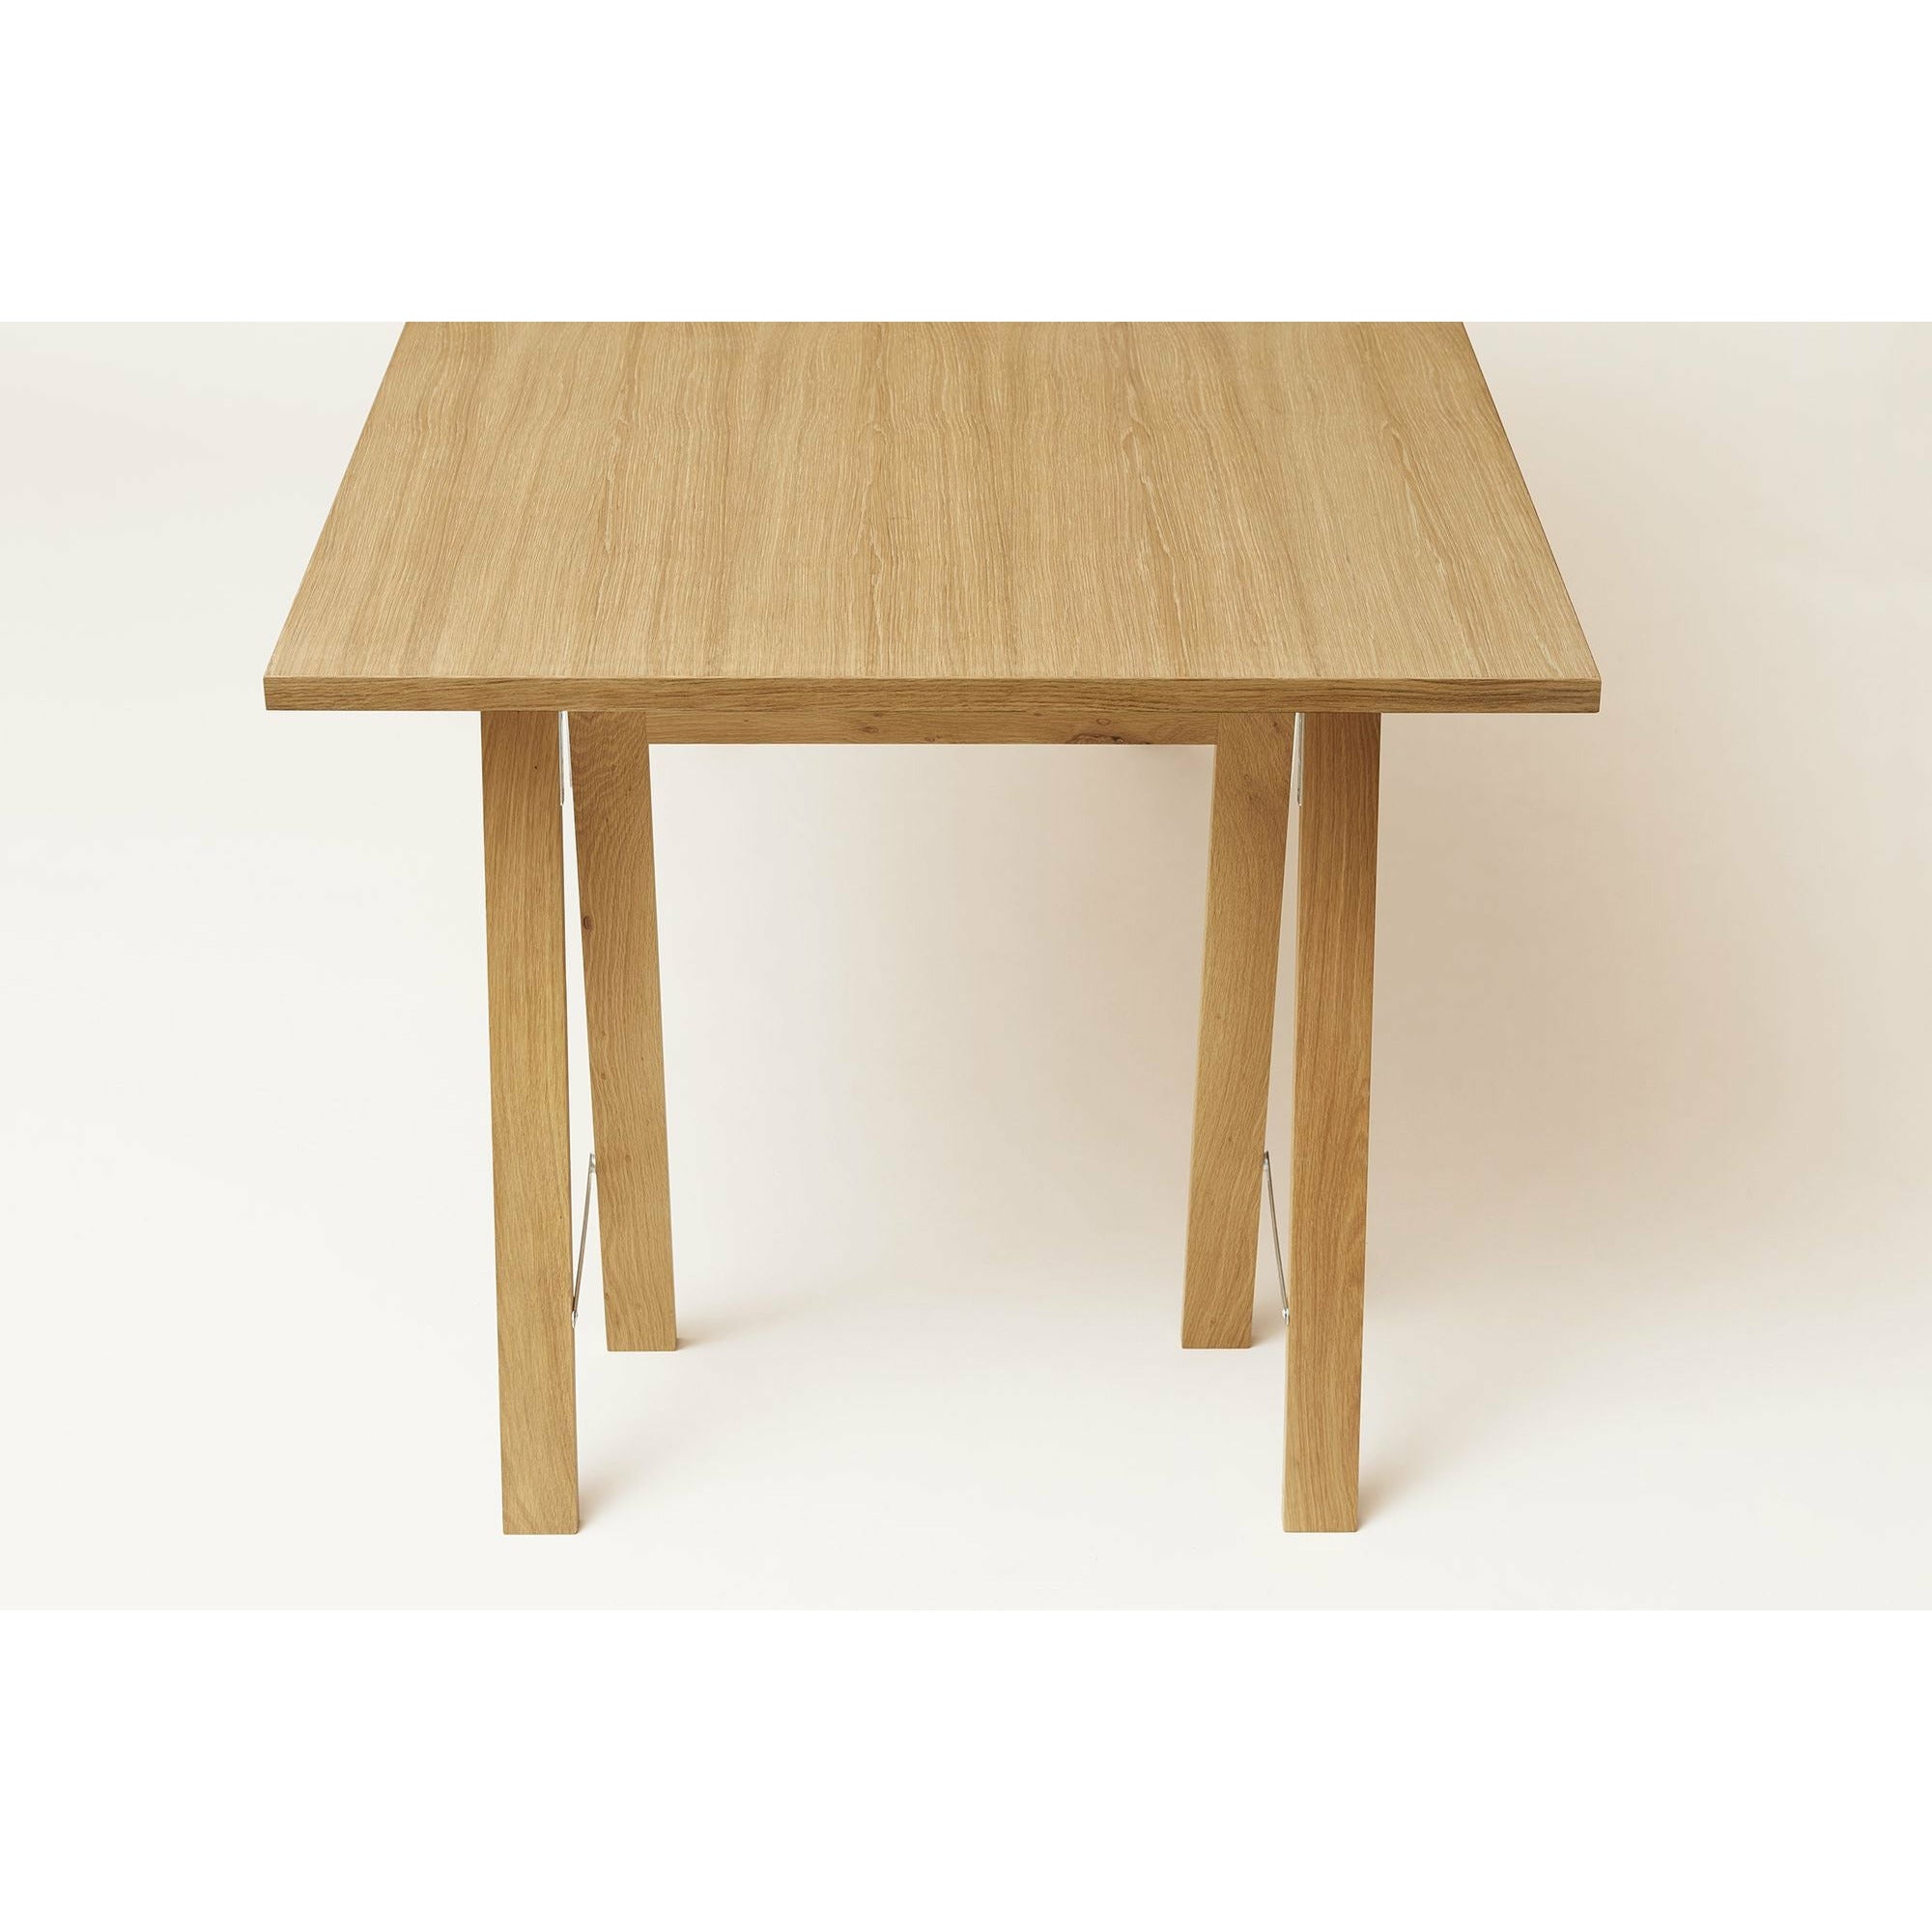 形式和完善的线性桌165x88厘米。橡木